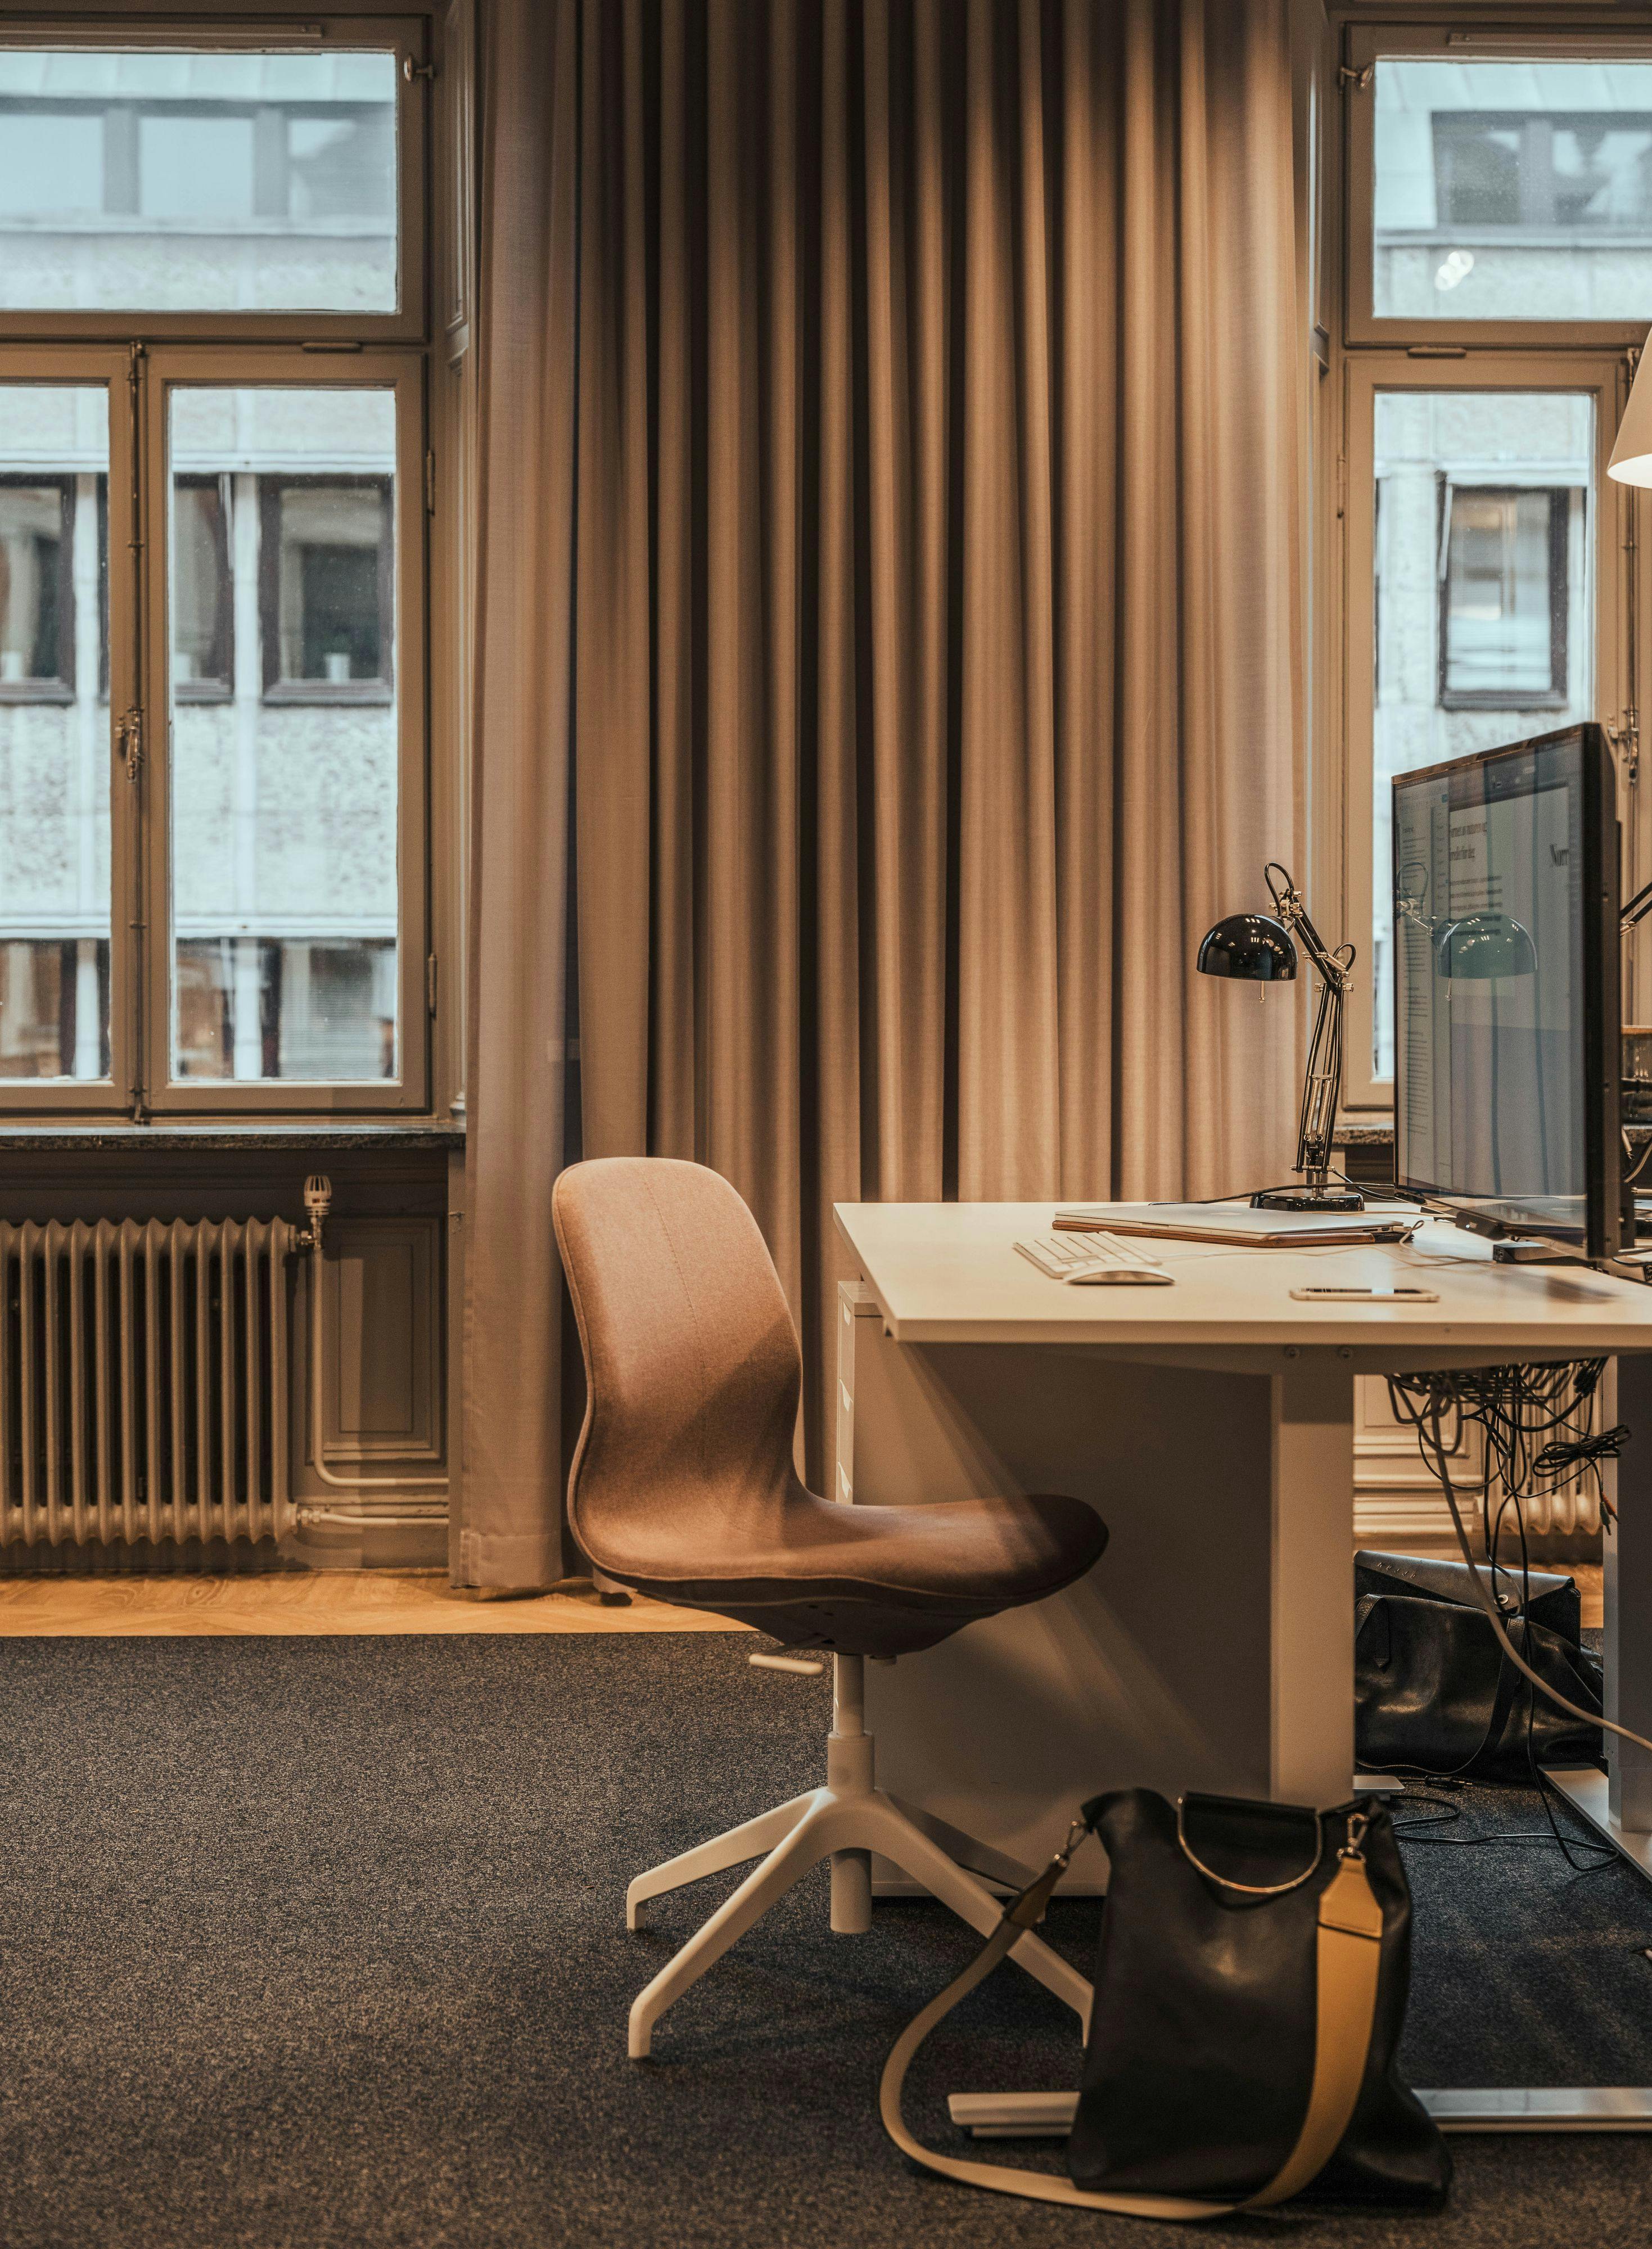 Office for FMCA design agency in Sundsvall